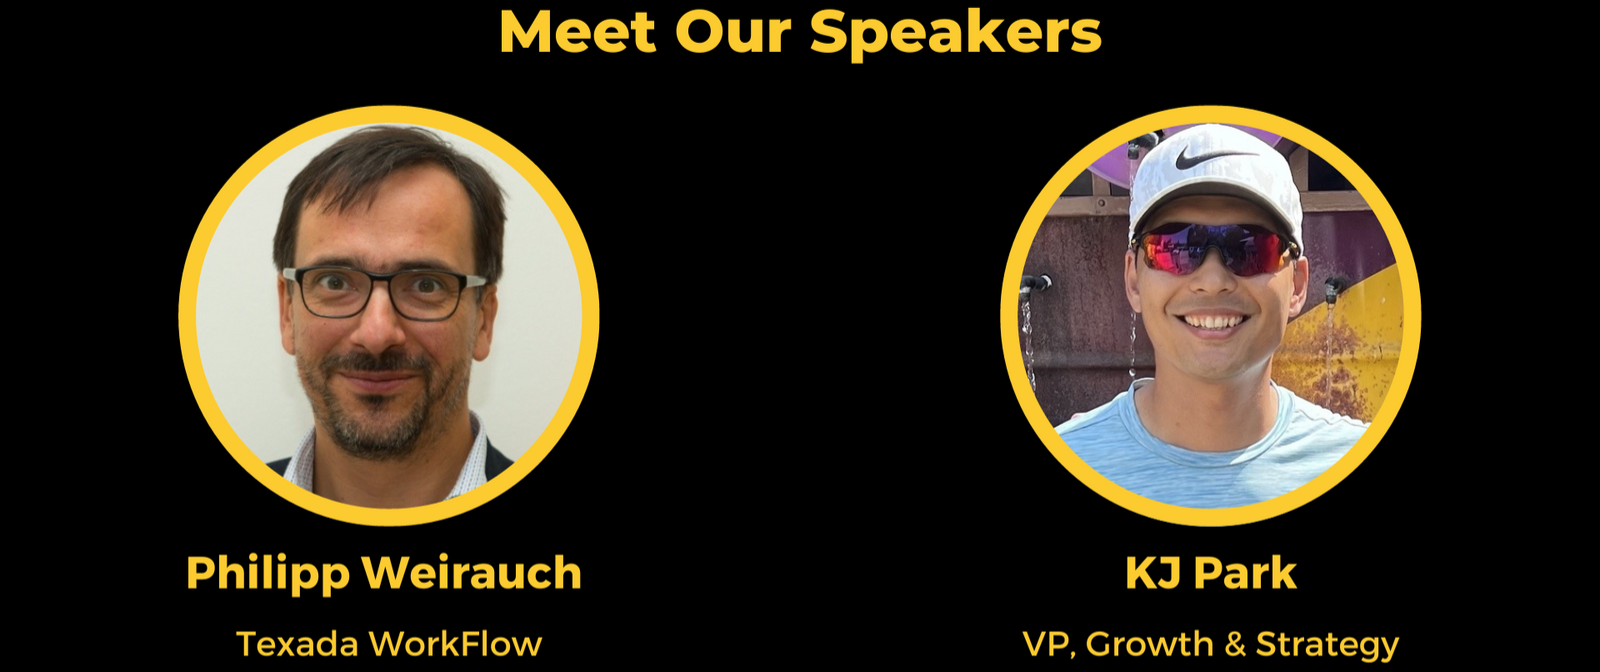 Meet Our Speakers - Edited